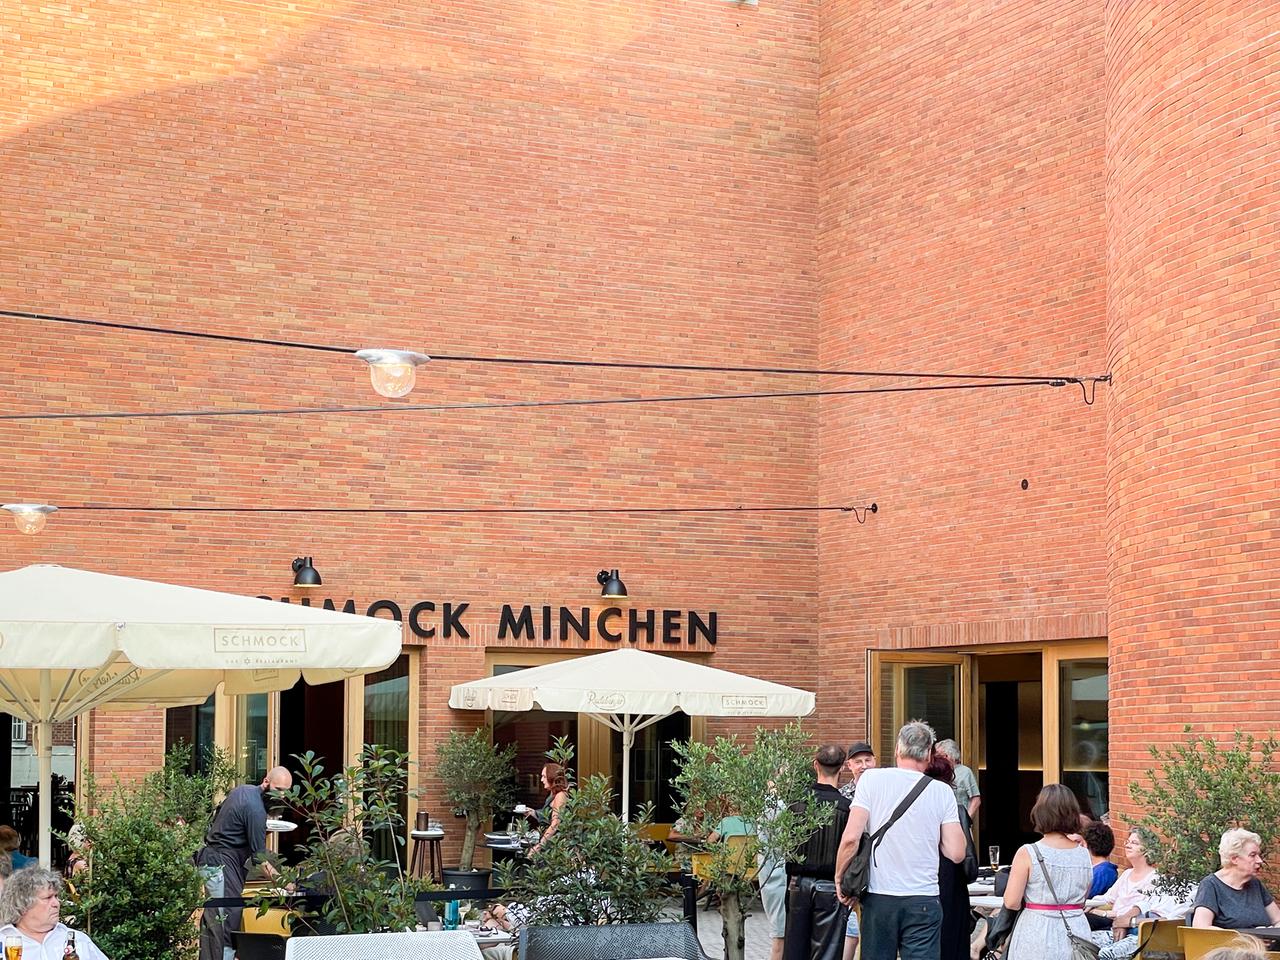 Fassade des Restaurants "Schmock" in direkter Nachbarschaft zum Münchener Theater.